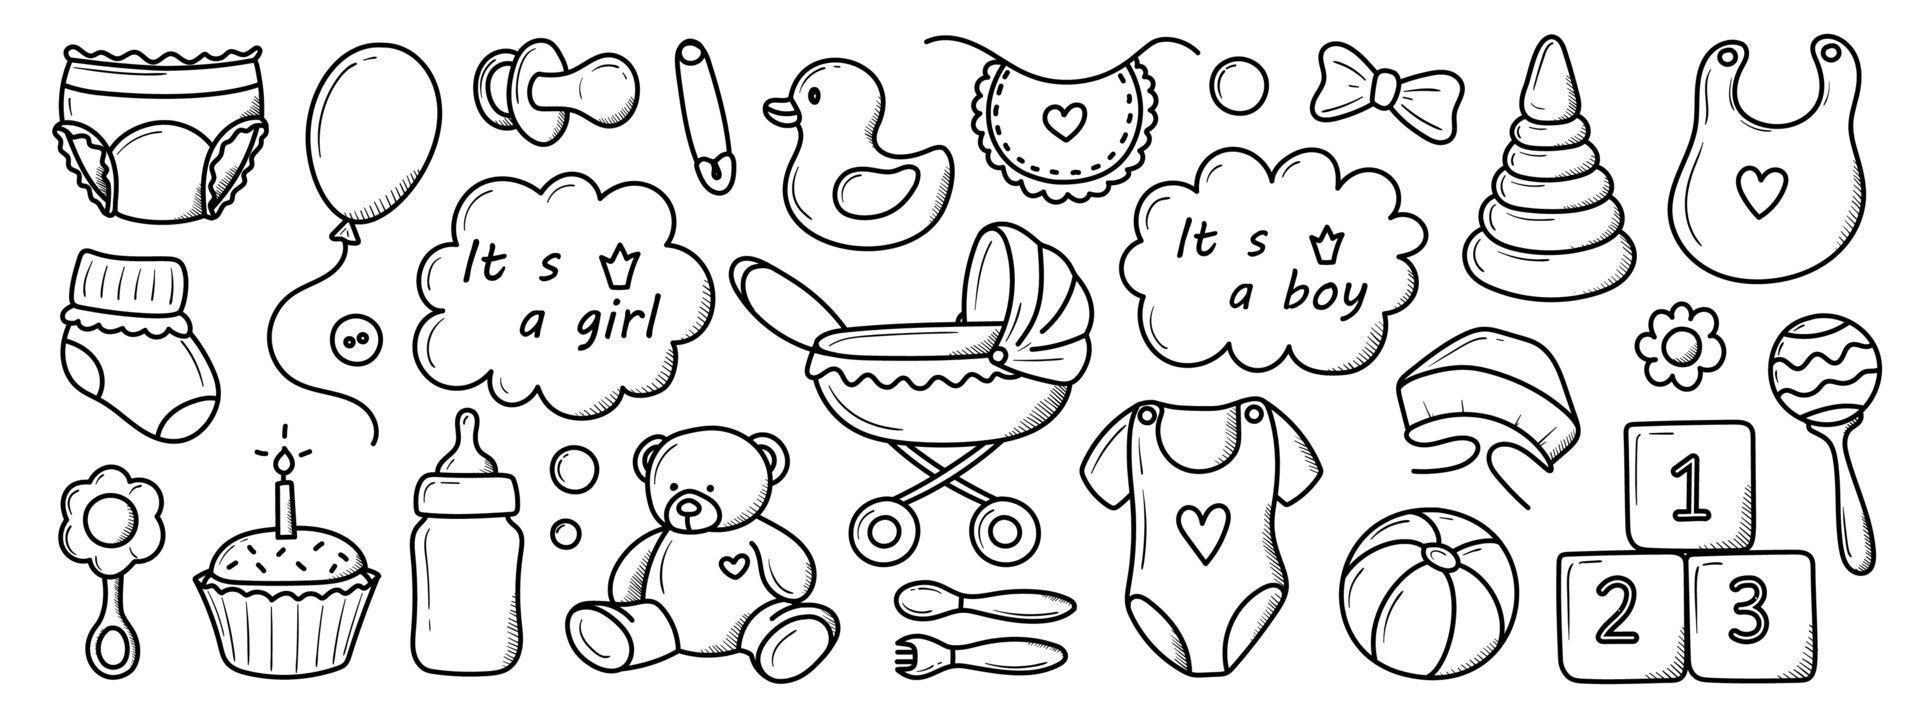 eine Reihe von Elementen geborener Kinder, handgezeichnet im Doodle-Stil vektor